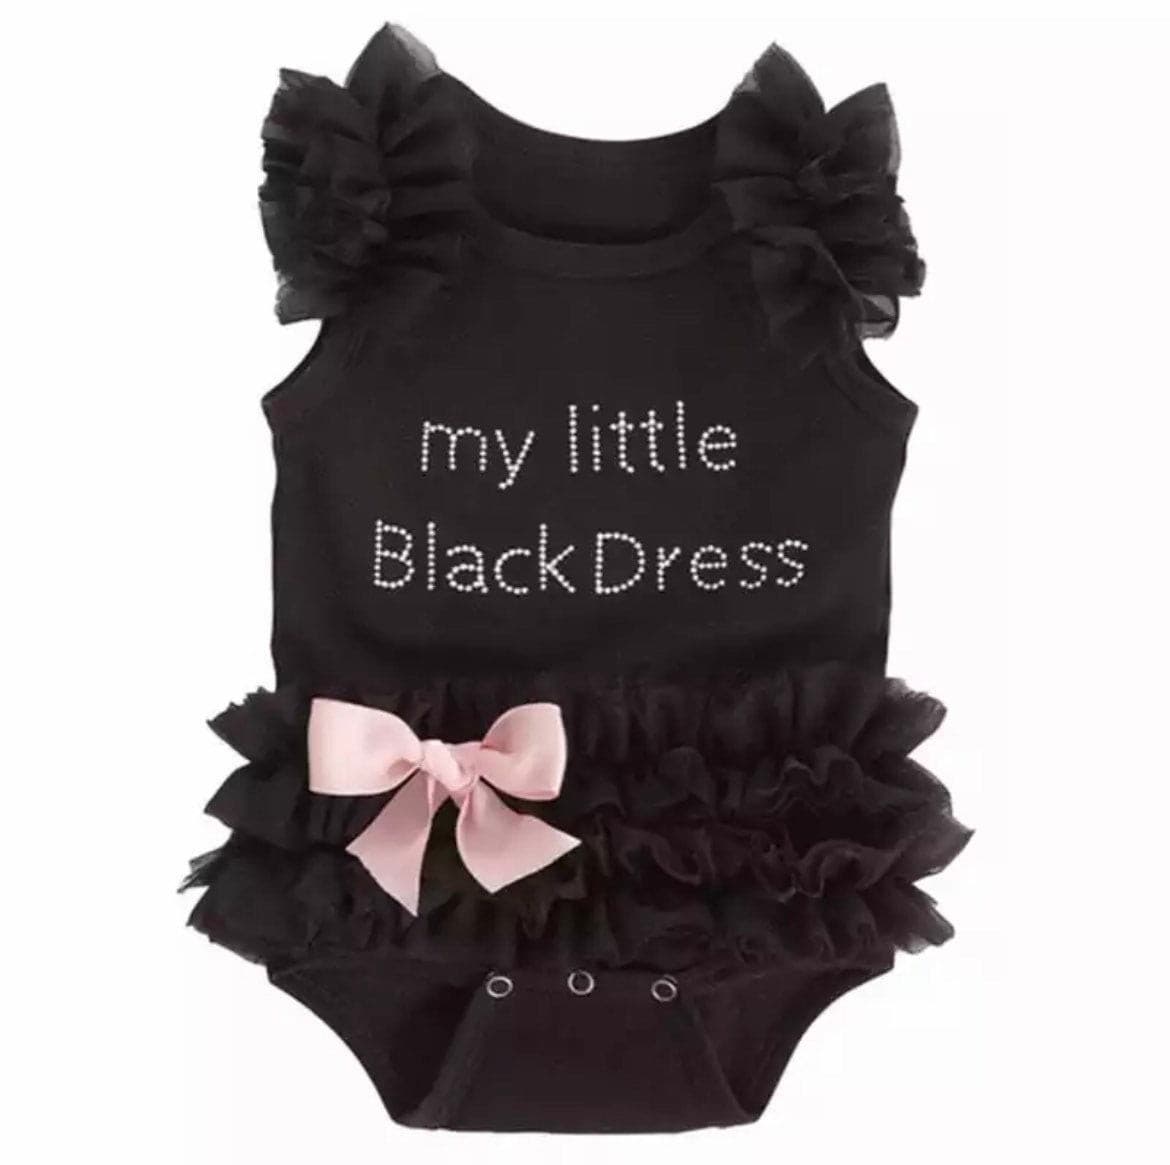 Lottie - Baby LBD Little Black Dress Romper Tutu.